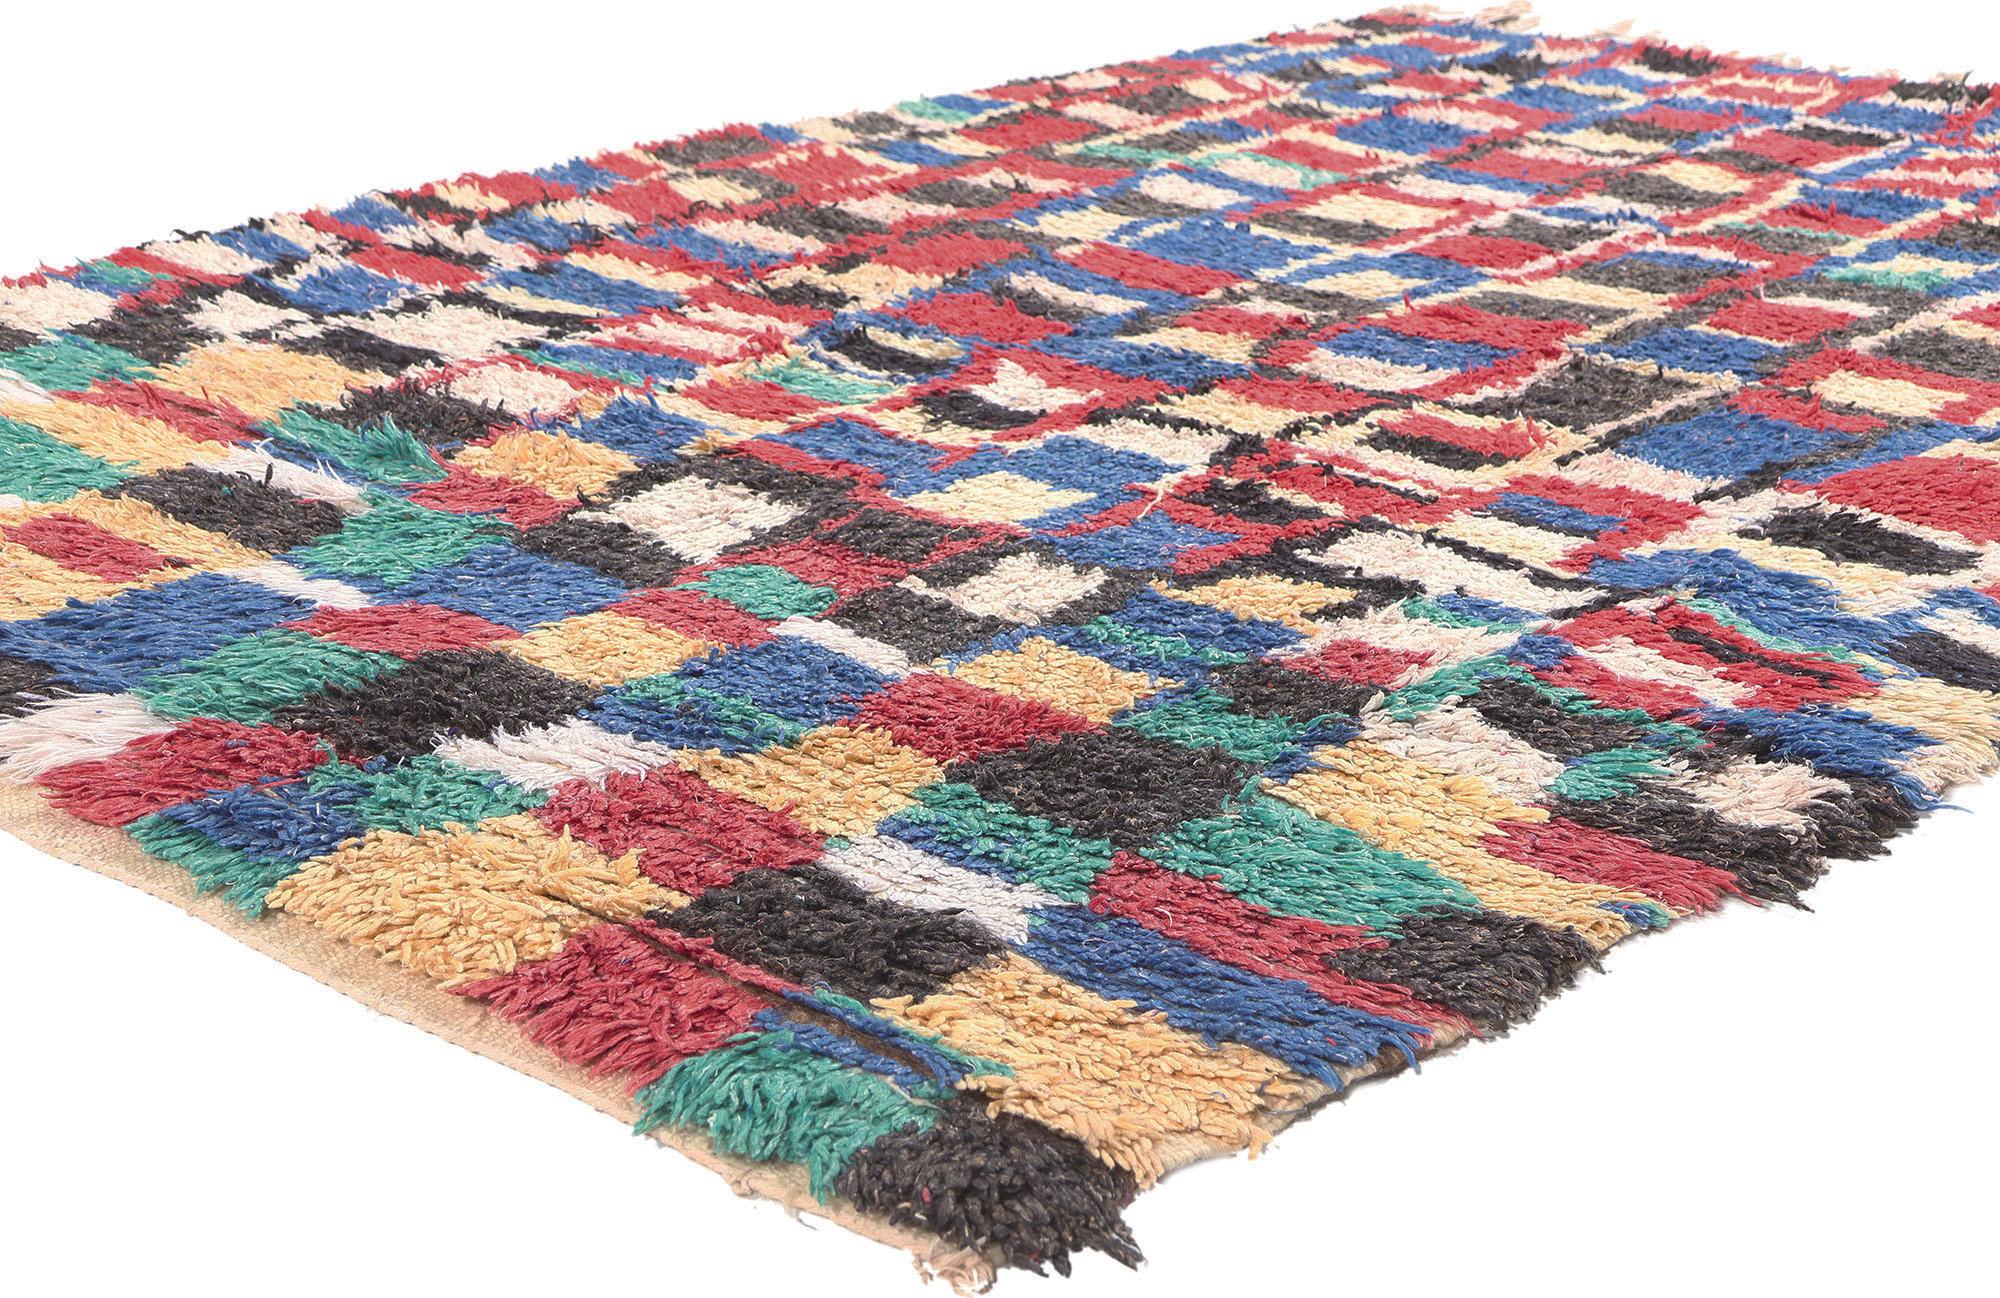 20405 Tapis marocain Vintage Boujad, 04'09 x 07'00.
Entrez dans le monde du design vibrant avec les tapis Boujad, réputés pour leurs motifs géométriques et leurs teintes audacieuses. Généralement tissés dans des tons vifs, les tapis marocains Boujad